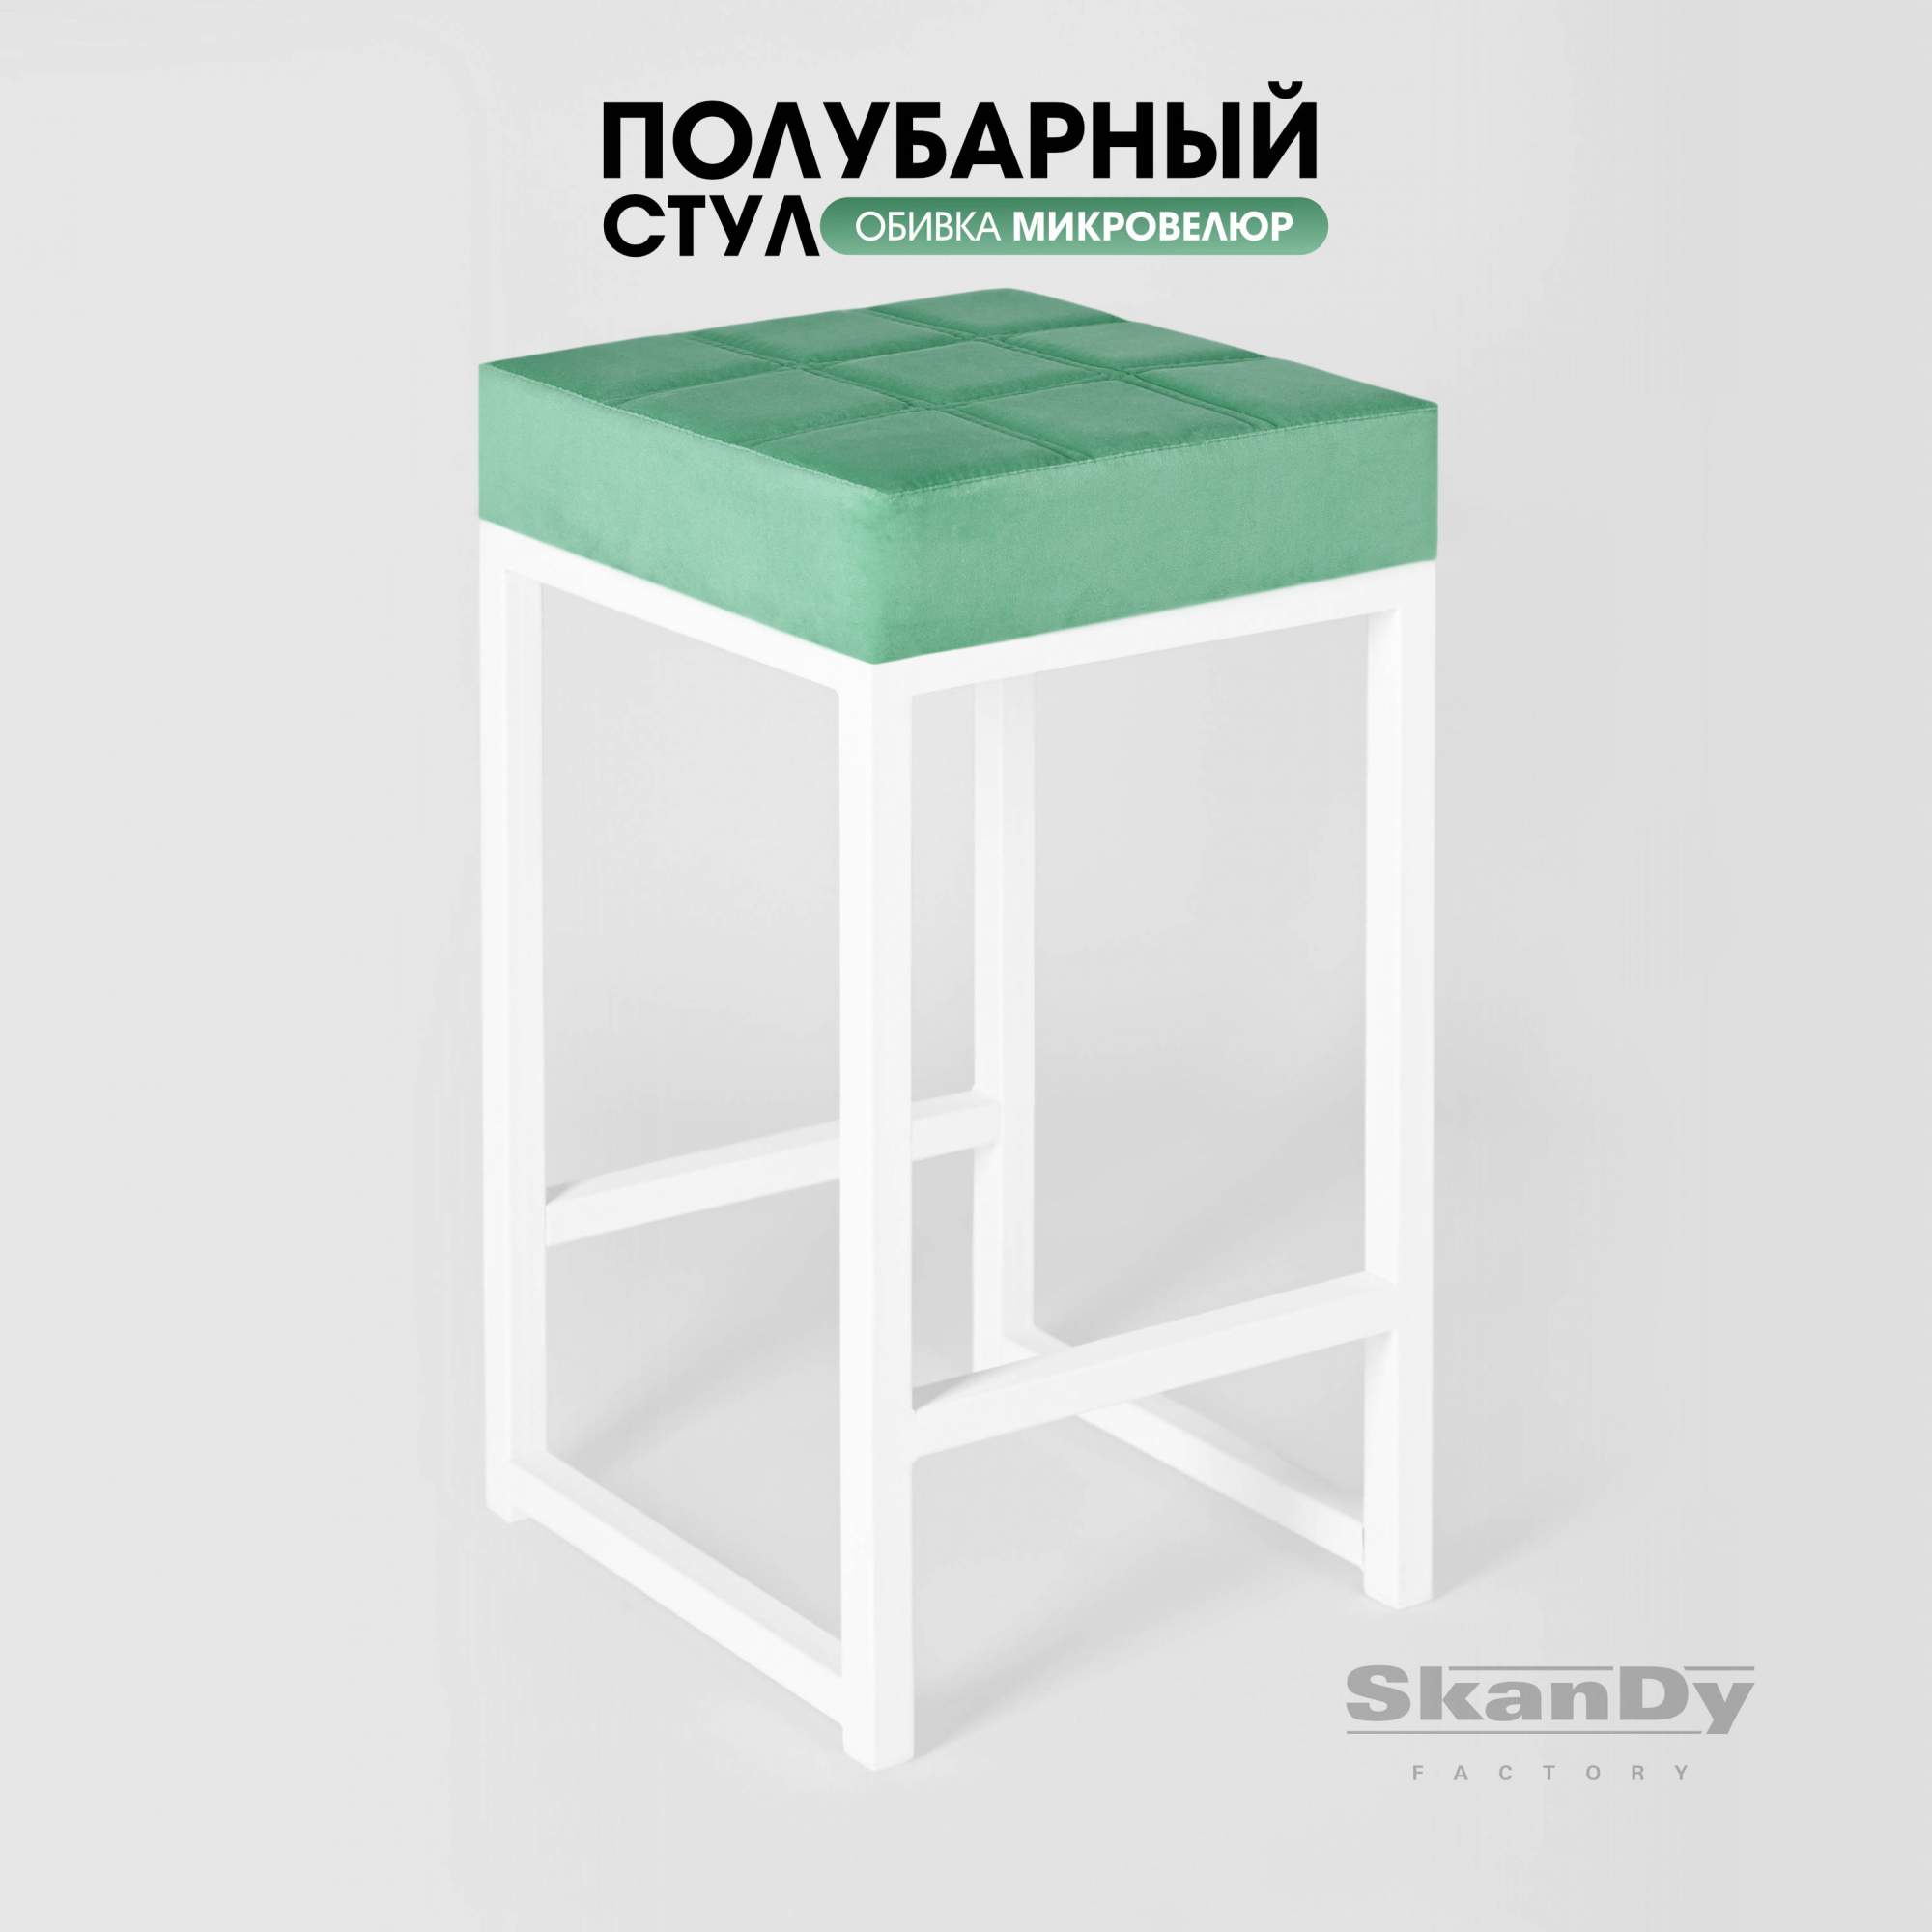 Полубарный стул для кухни SkanDy Factory, 66 см, мятный